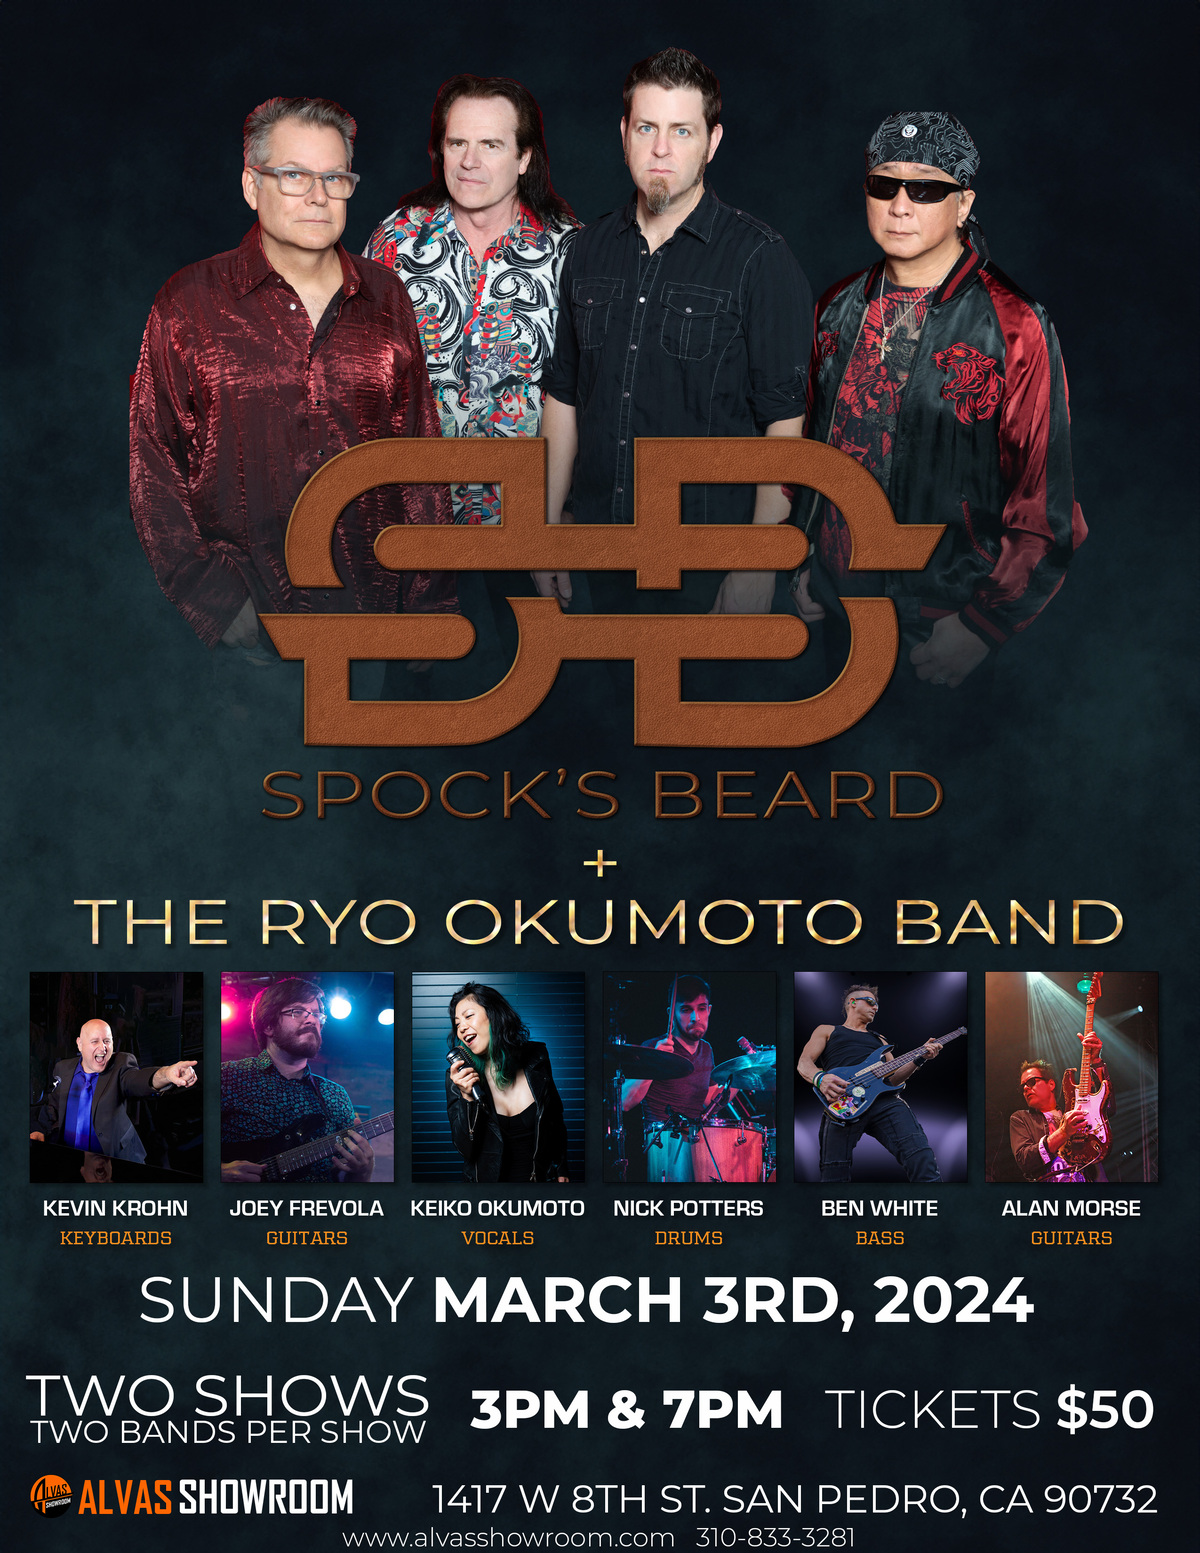 Spock's Beard + The Ryo Okumoto Band at Alvas Showroom!